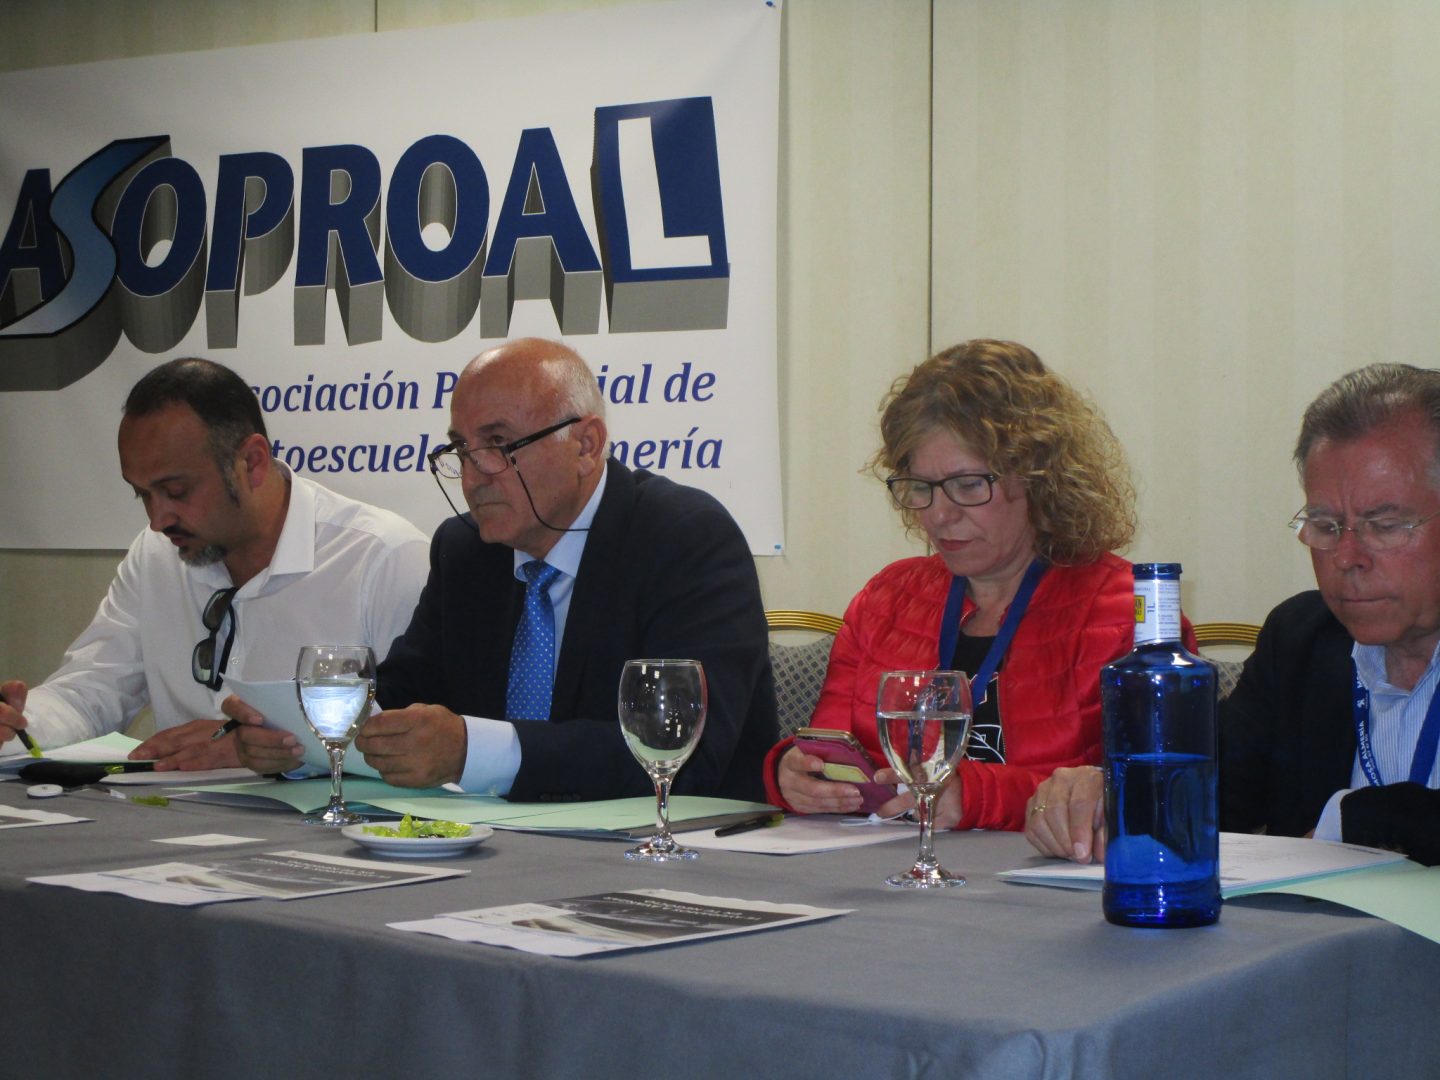 El virgitano Rafael Villegas deja de presidir ASOPROAL tras 16 años al frente y convoca elecciones